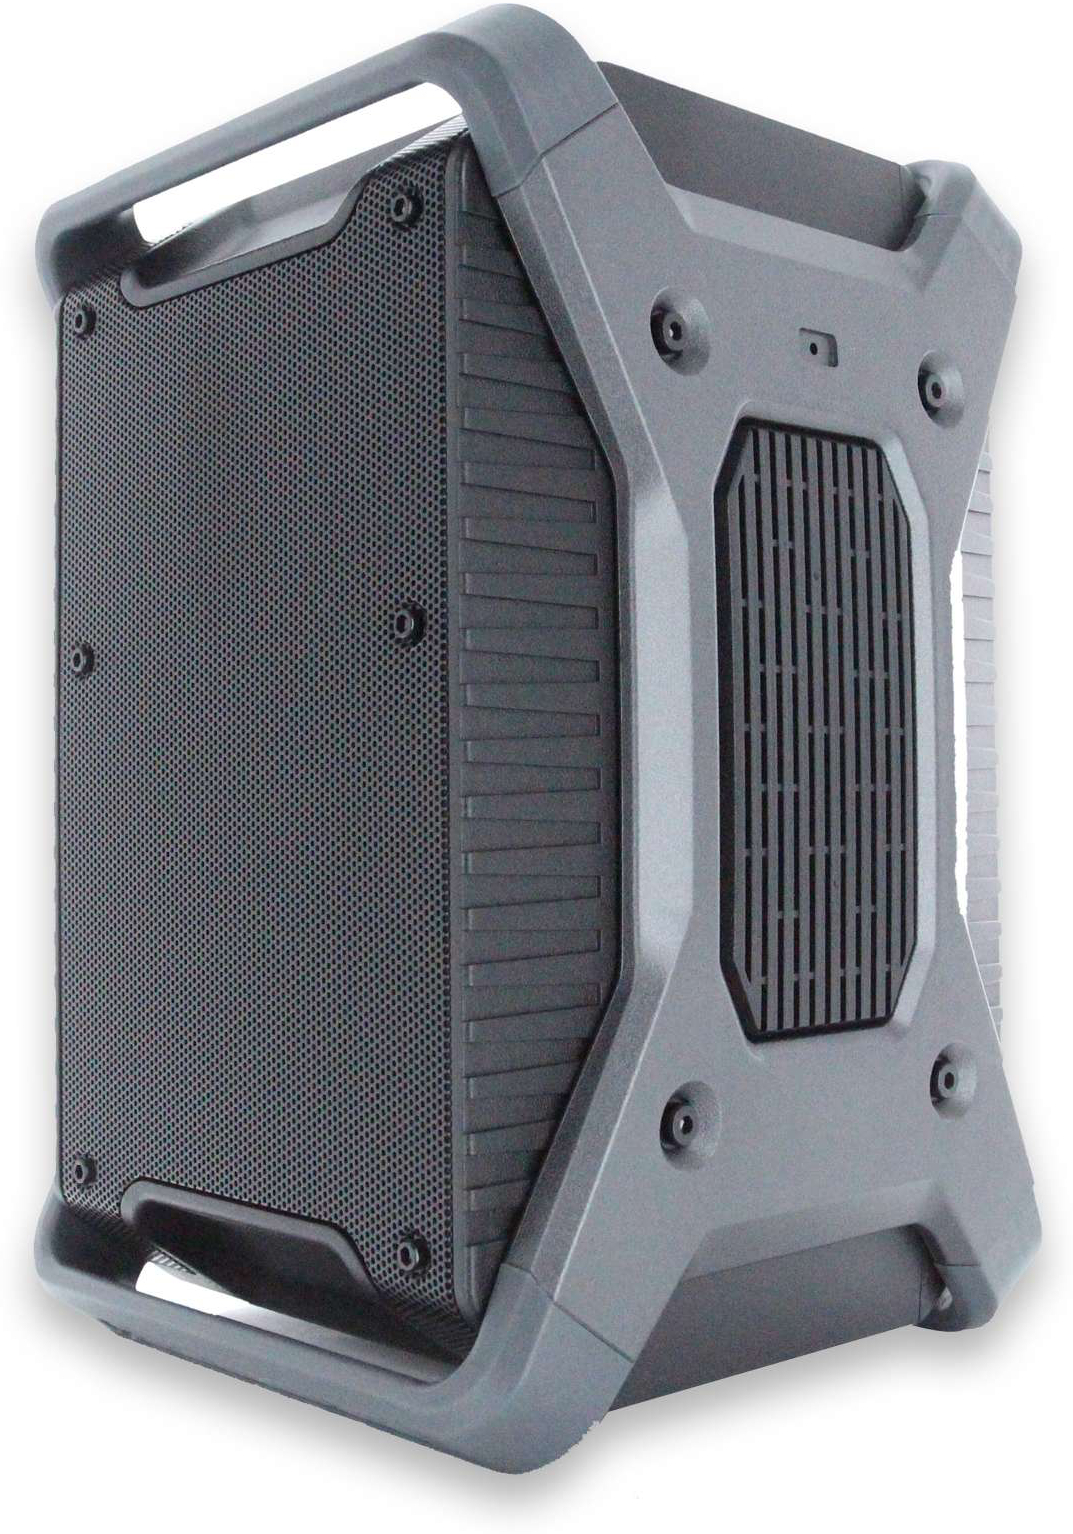 Definitive Audio Easyrider V2 - Sono Portable - Main picture